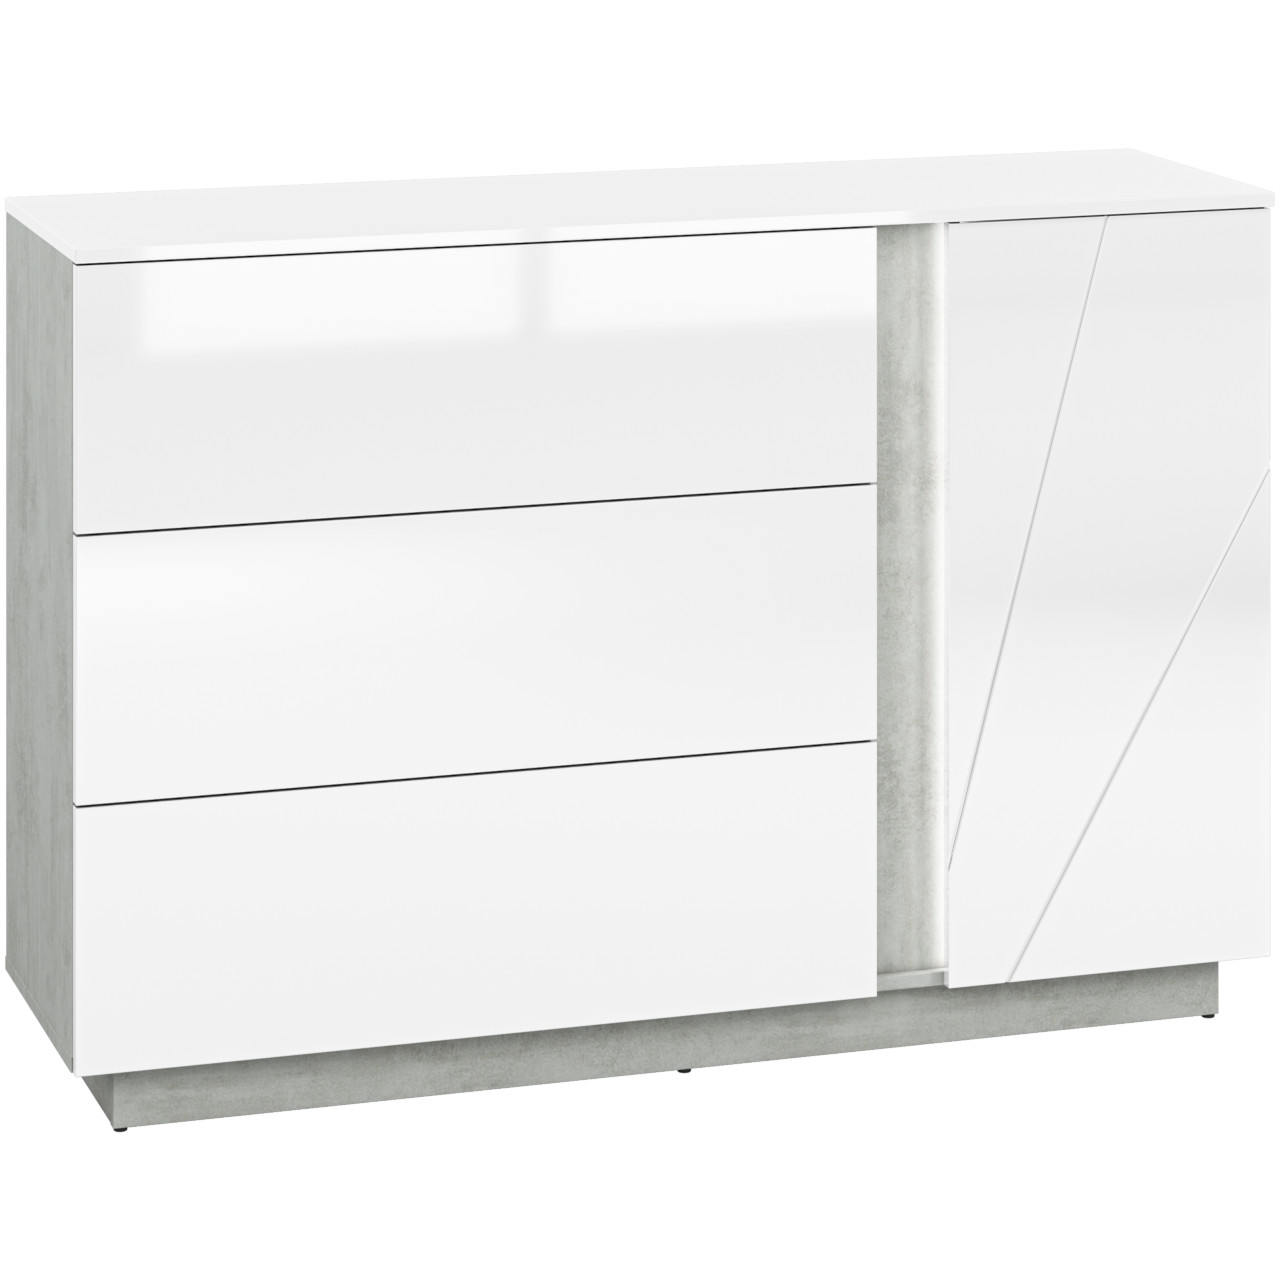 Storage Cabinet LORA LA07 silver concrete / white gloss